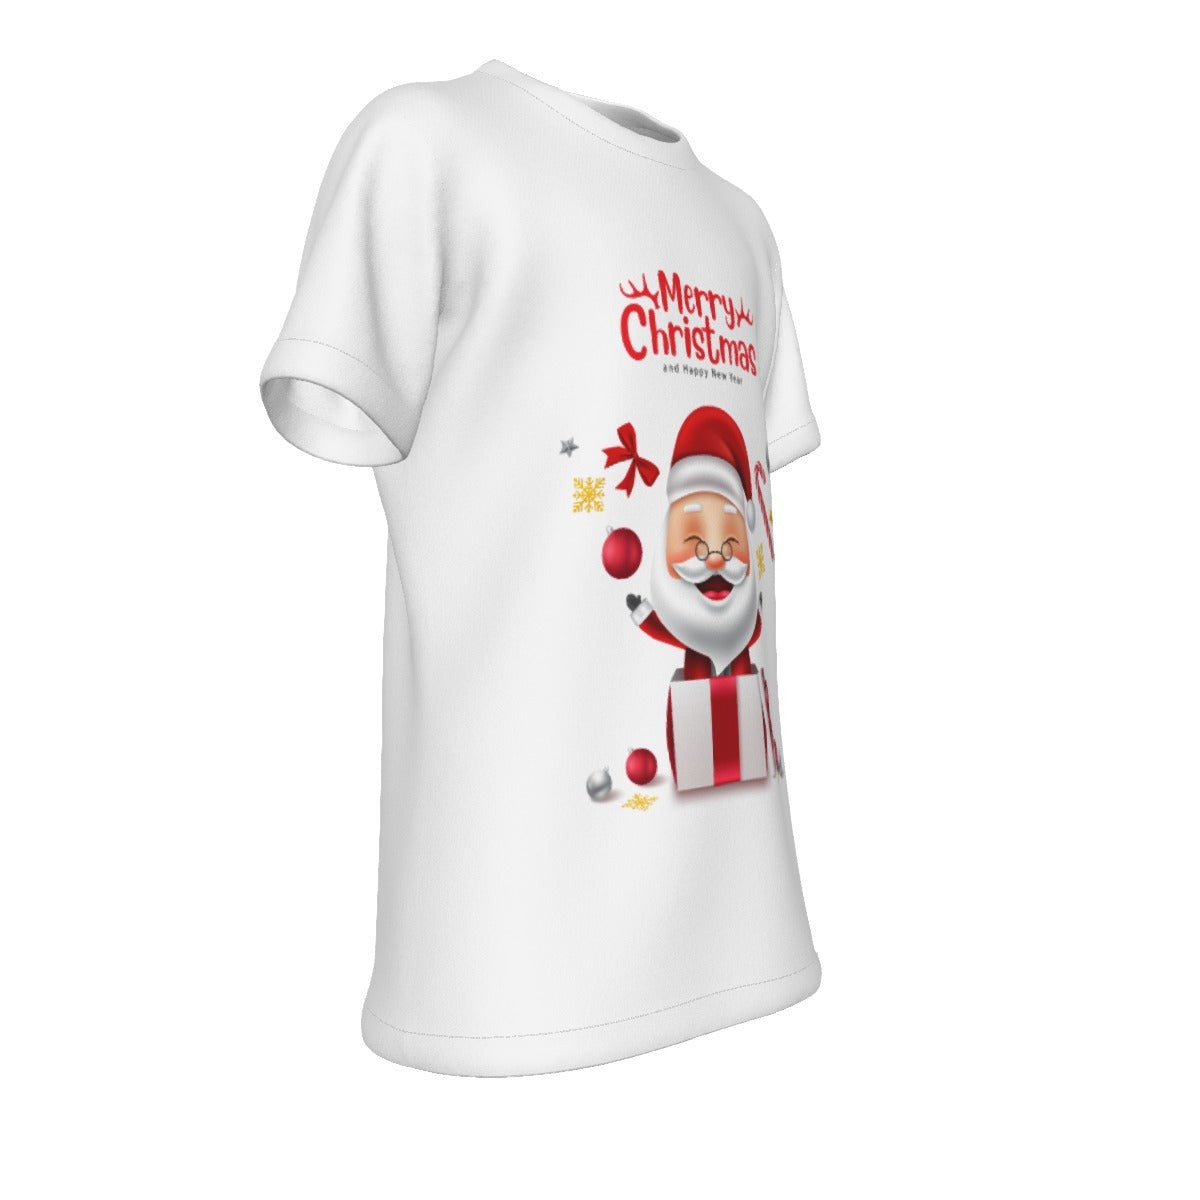 Kid's Christmas T-Shirt - Santa MC HNE - Festive Style